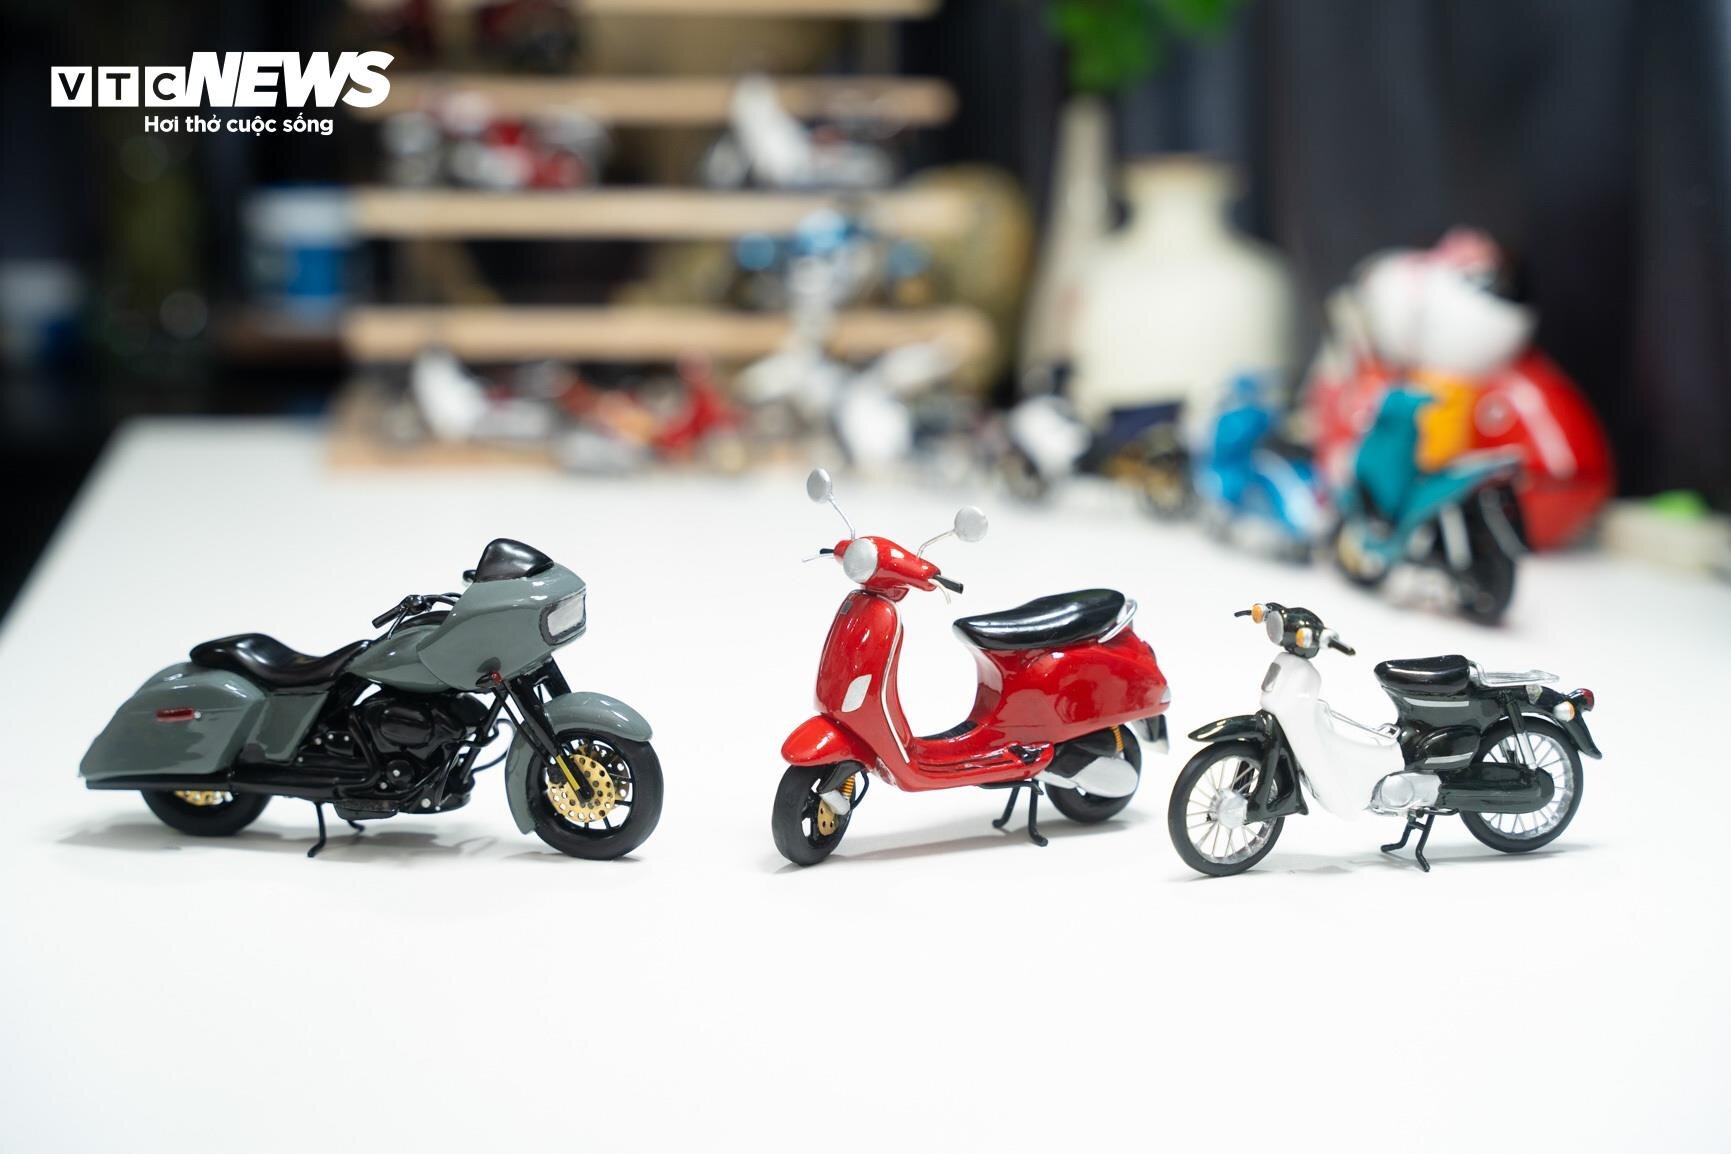 Bộ sưu tập mô hình xe máy bằng đất sét của chàng trai 9X Hà thành- Ảnh 10.